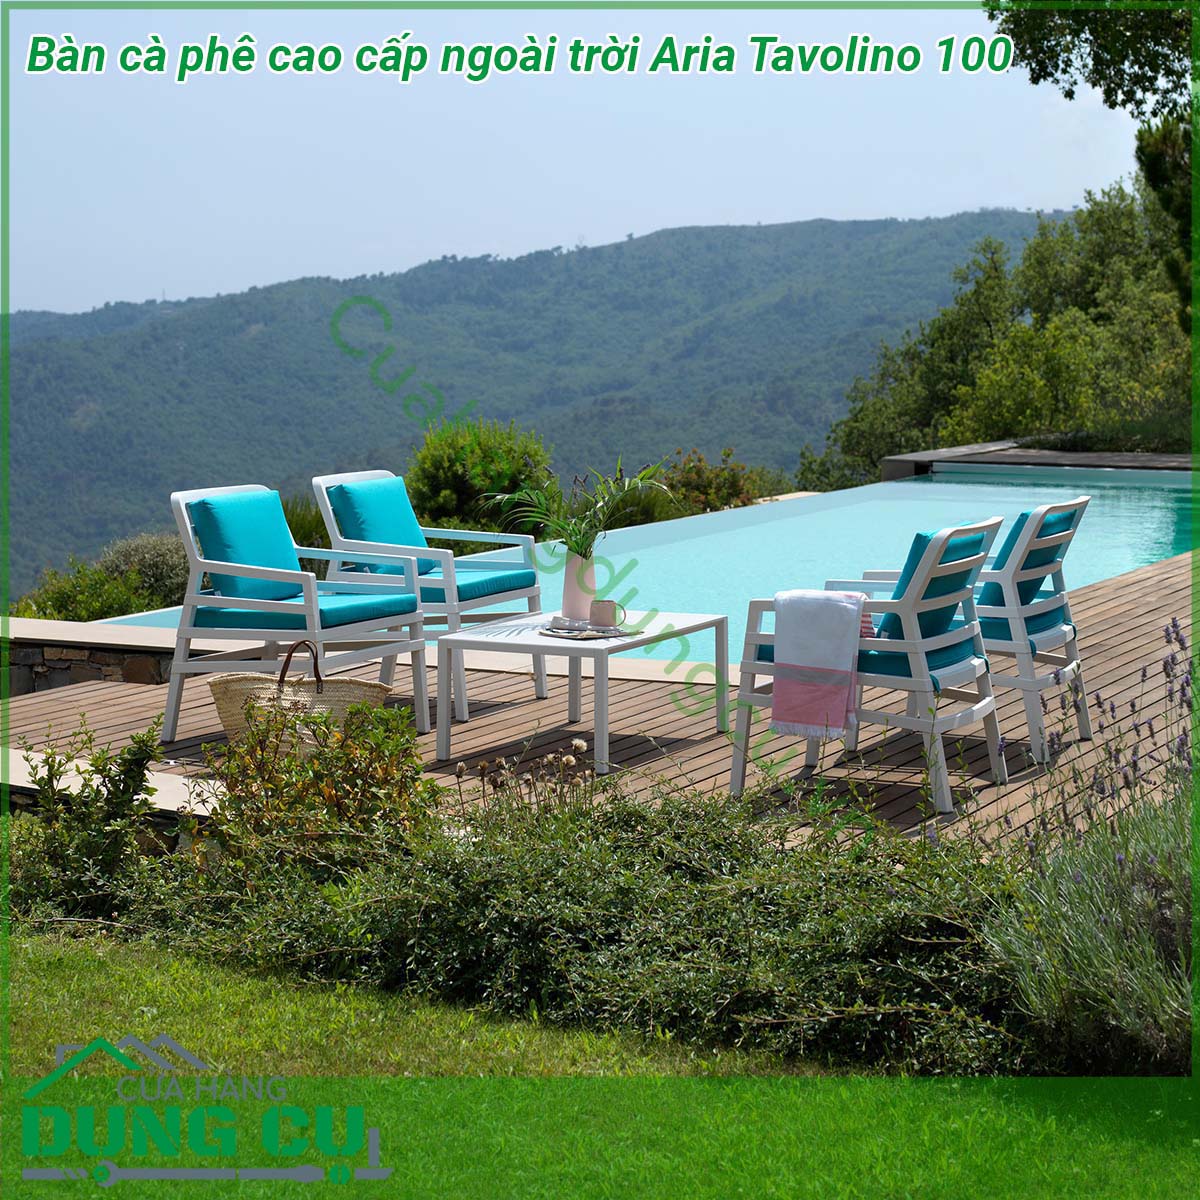 Bàn cà phê cao cấp ngoài trời Aria Tavolino 100 được làm từ chất liệu cao cấp với các ưu điểm như chống biến dạng cách điện không bị biến dạng Với kiểu dáng thiết kế tinh tế mẫu bàn làm tăng thêm sự sang trọng và đẳng cấp cho không gian sân vườn của bạn